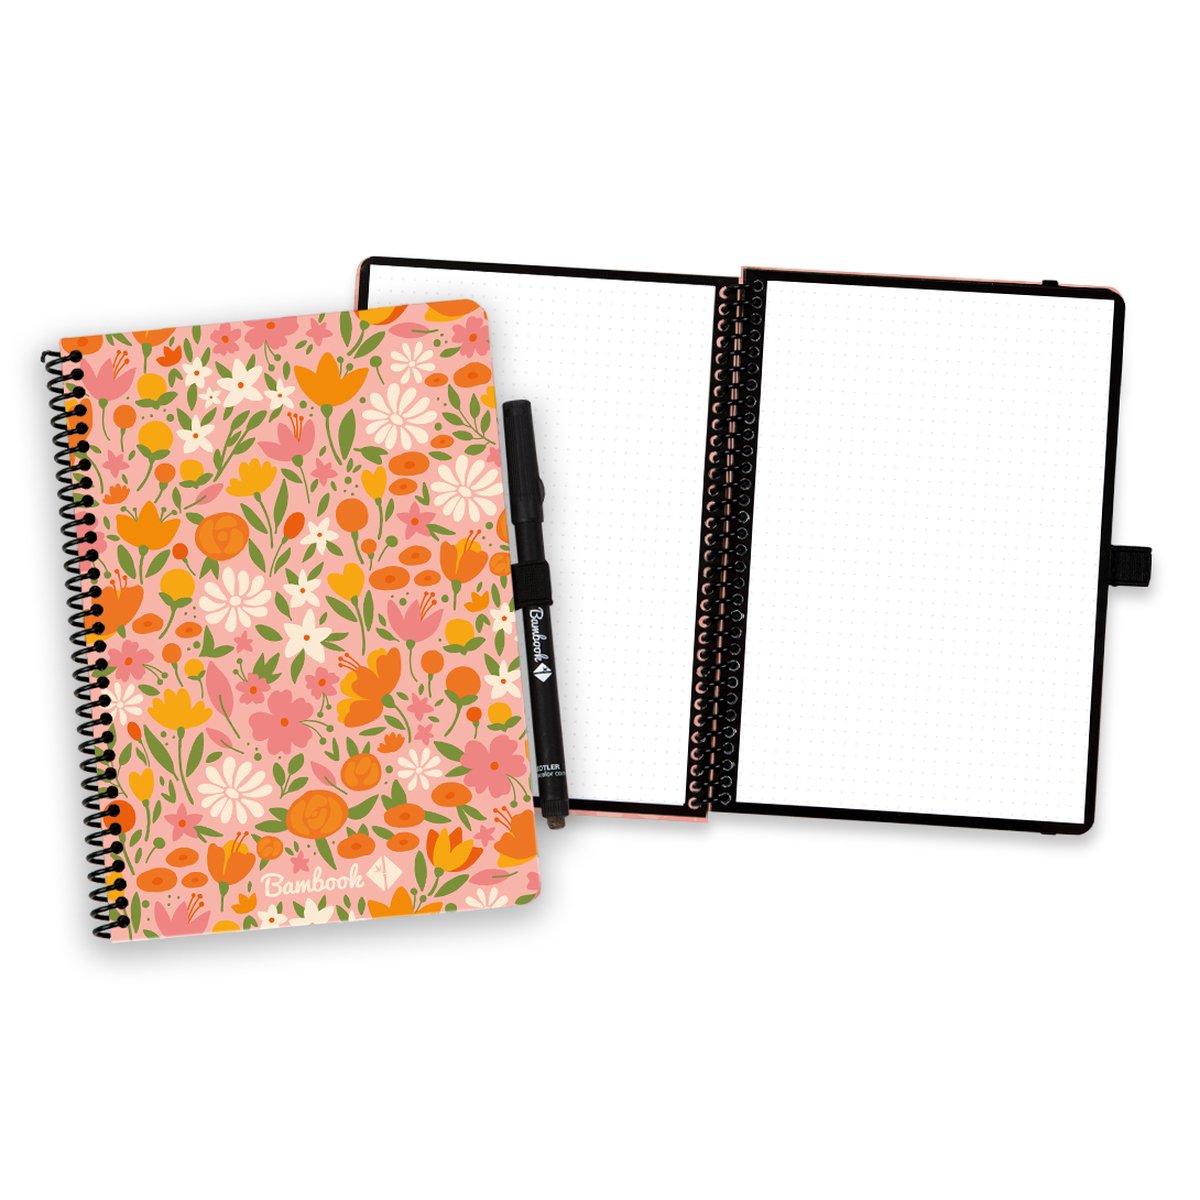 Bambook Floral uitwisbaar notitieboek - A5 - Dotted pagina's - Duurzaam, herbruikbaar whiteboard schrift - Met 1 gratis stift